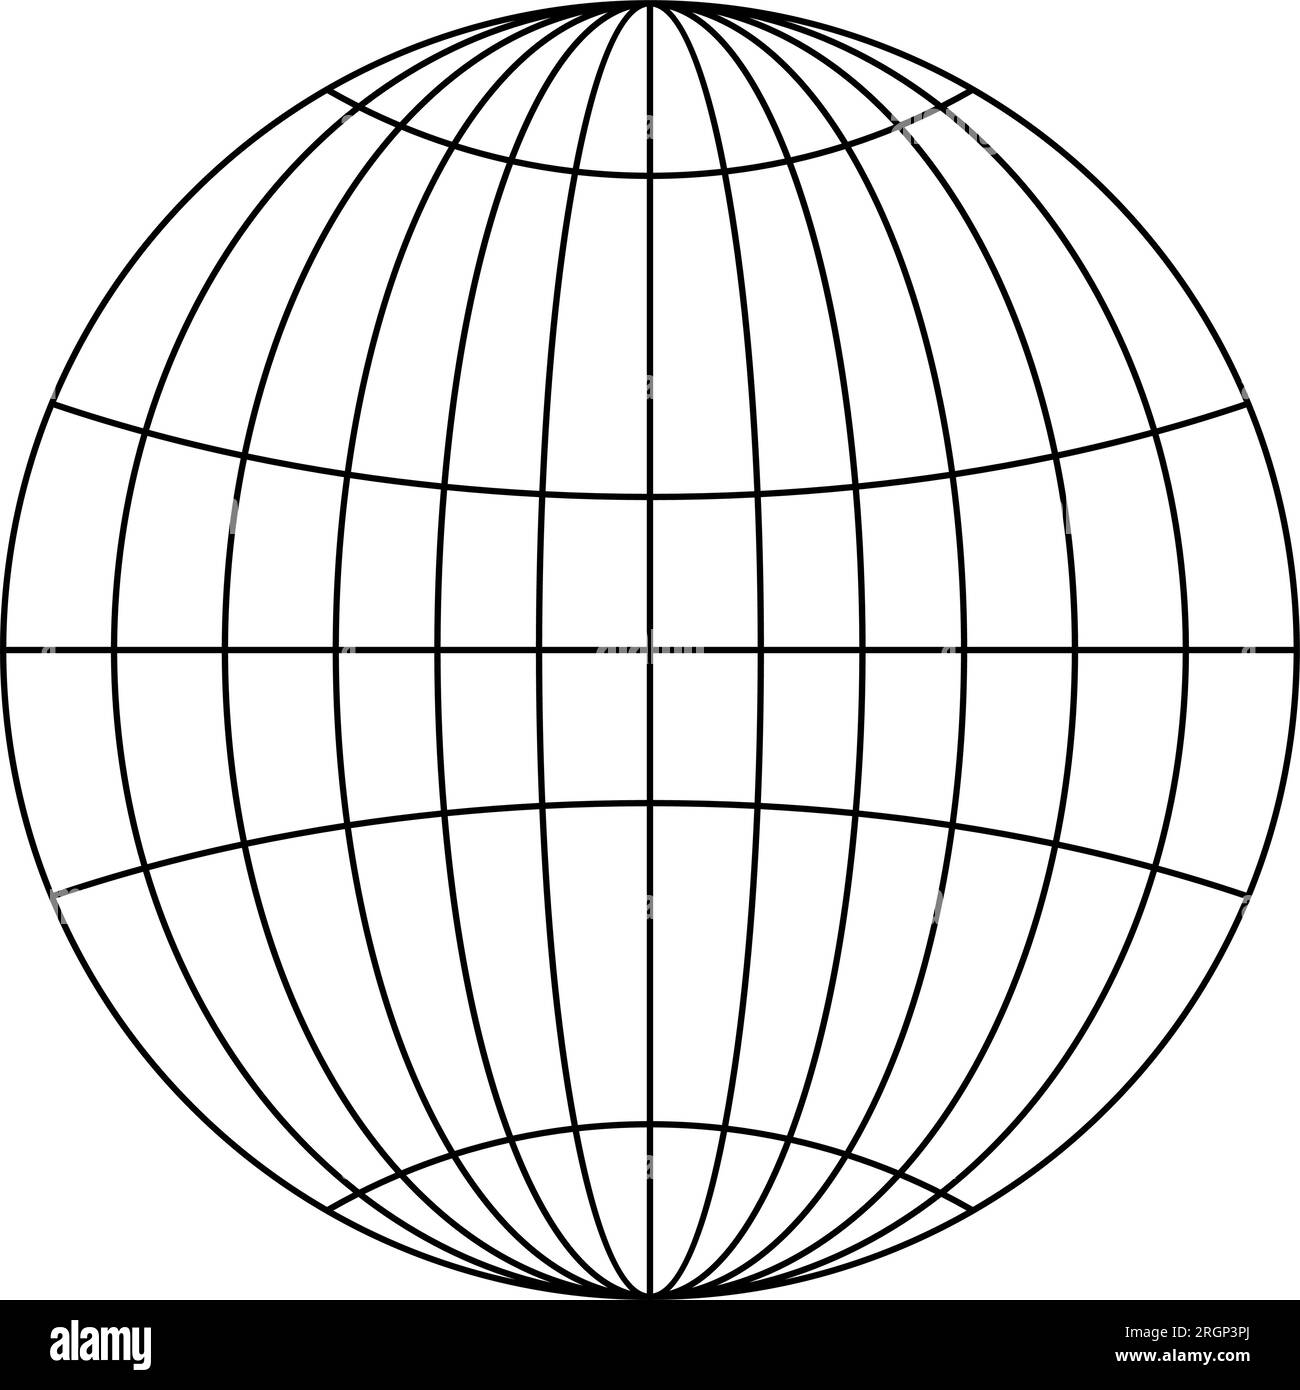 Symbole vecteur planète terre. Globe Silhouette. Fond isolé dans l'exemple utilisable pour des projets marins, nautiques, logistiques, astrologiques ou de trekking. Illustration de Vecteur